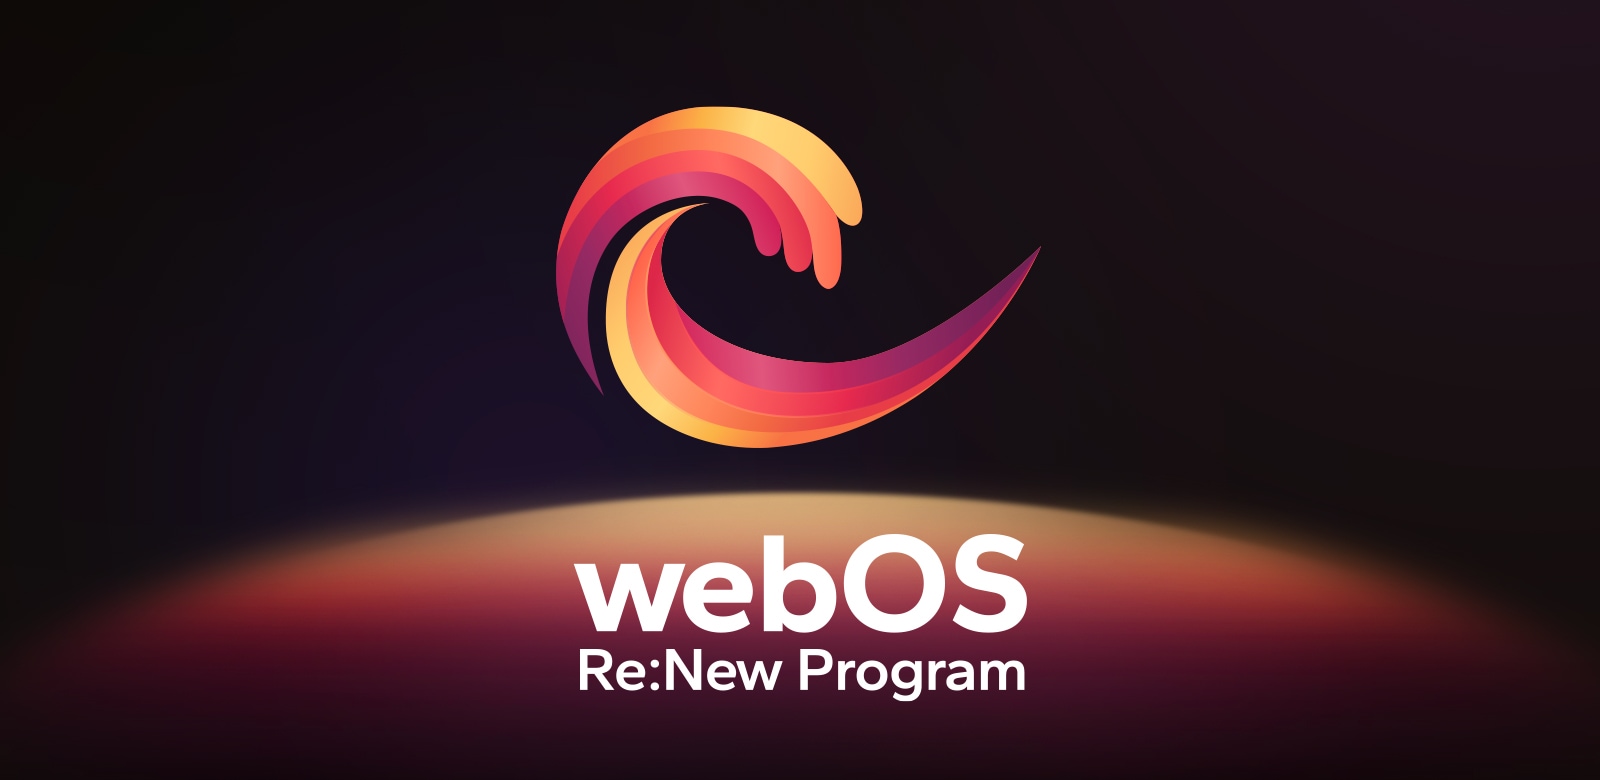 Slika logotipa webOS Re:New Program na črnem ozadju z modrim vrhom in vijolično kroglo na dnu.